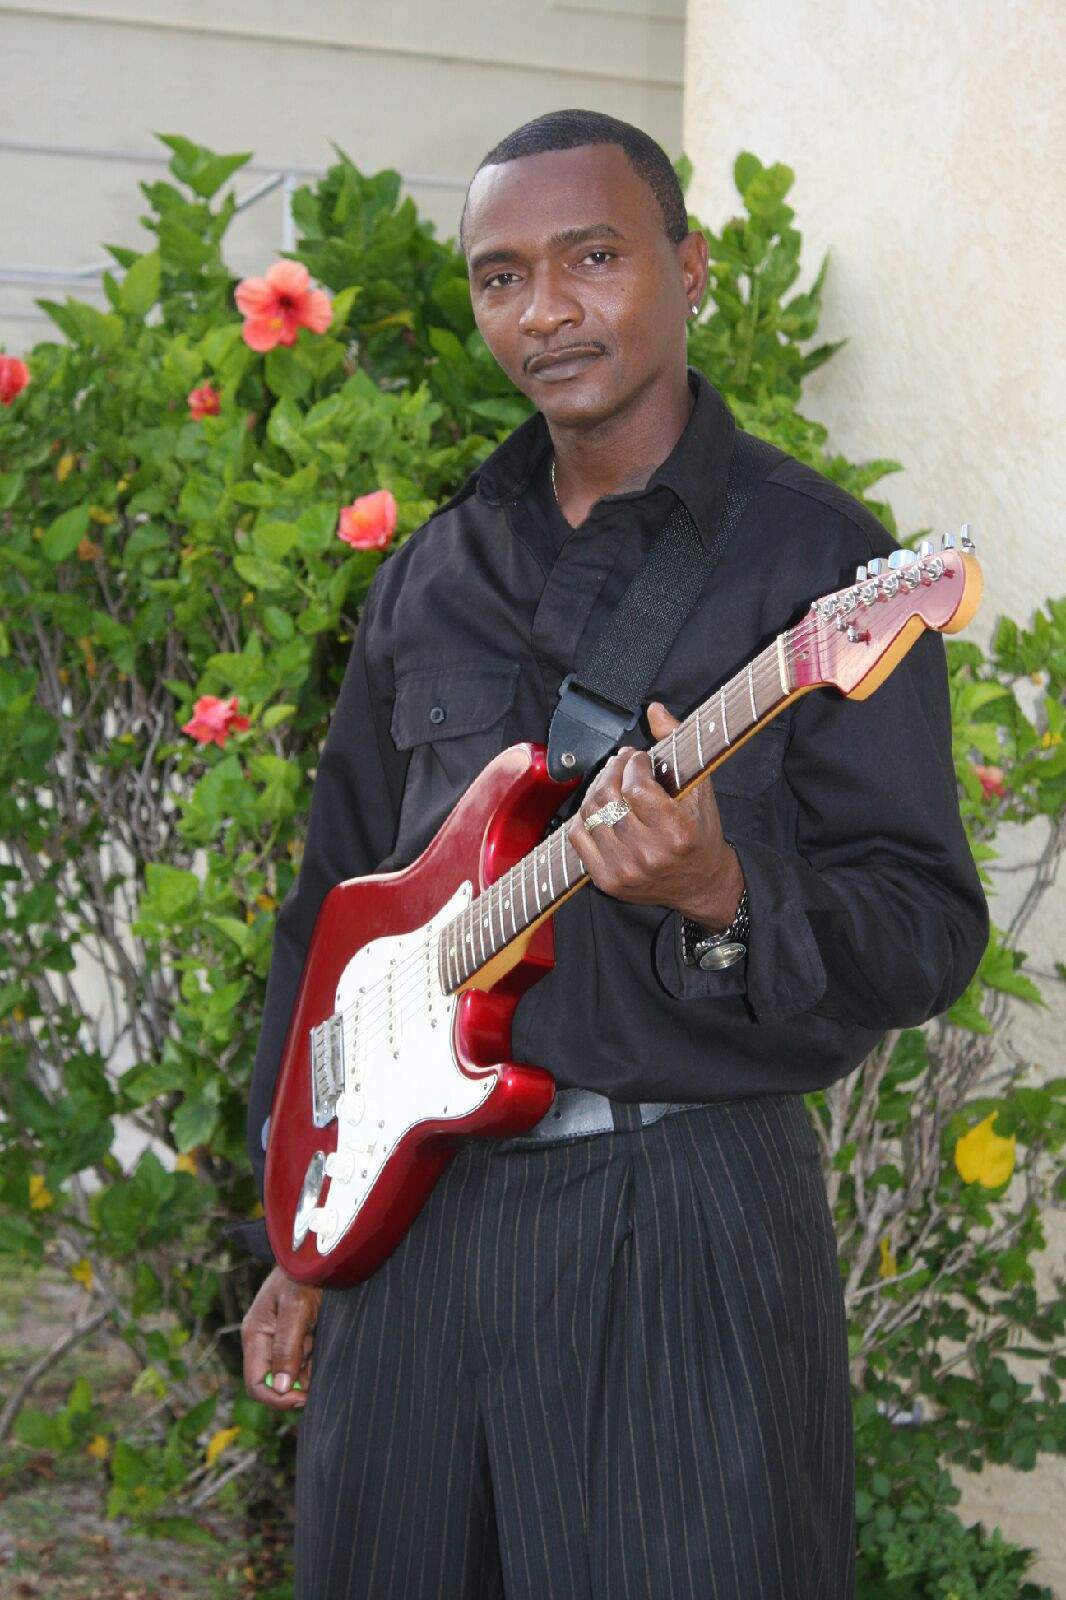 Man holding red bass guitar